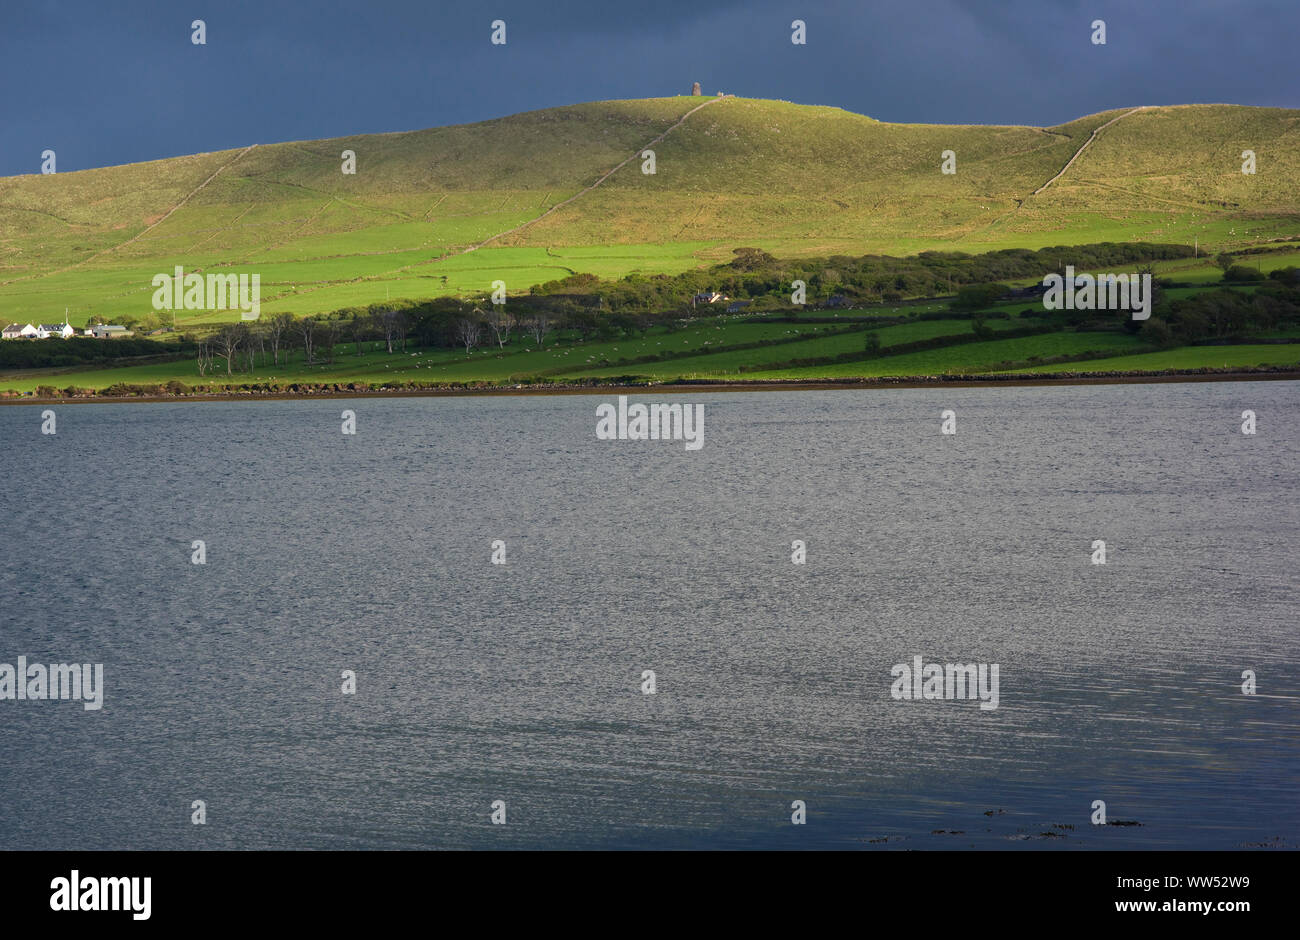 Ireland, County Kerry, Dingle peninsula, coast at the Dingle Bay Stock Photo